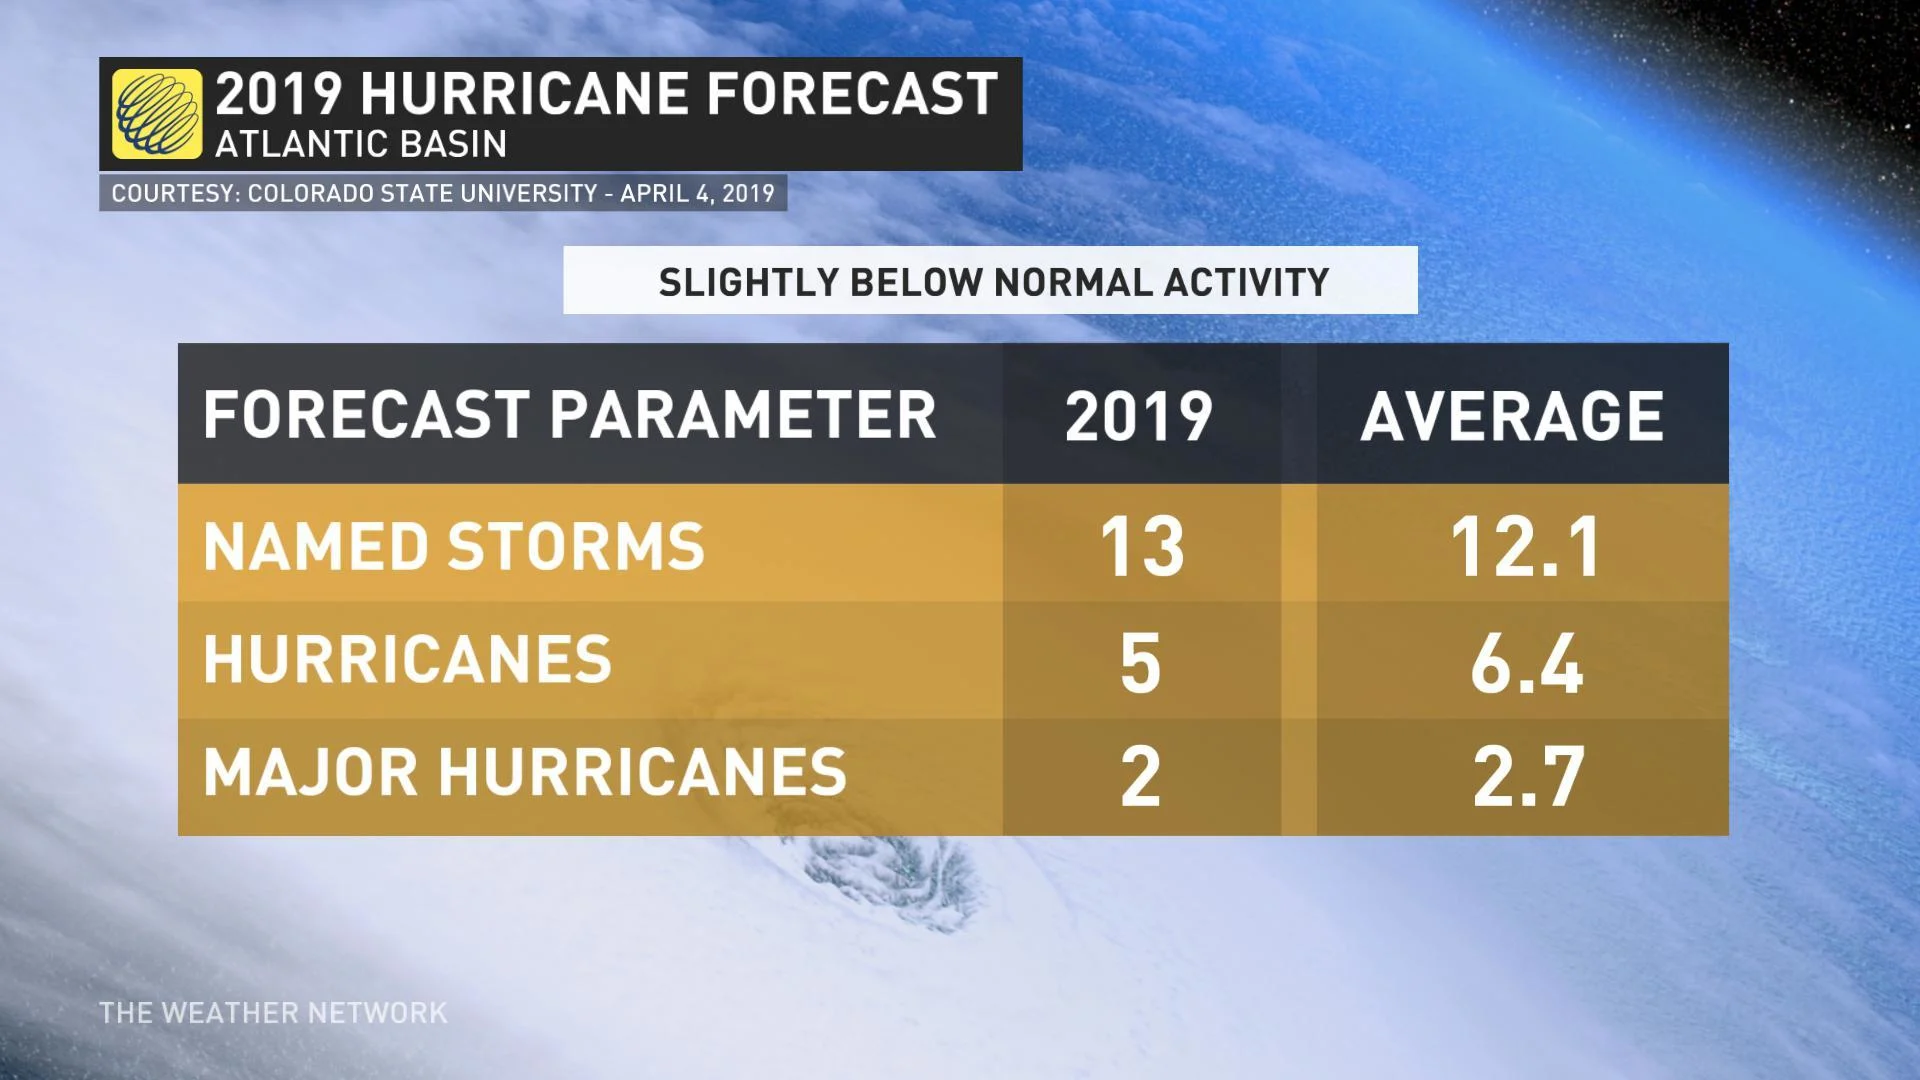 2019 Hurricane Forecast board